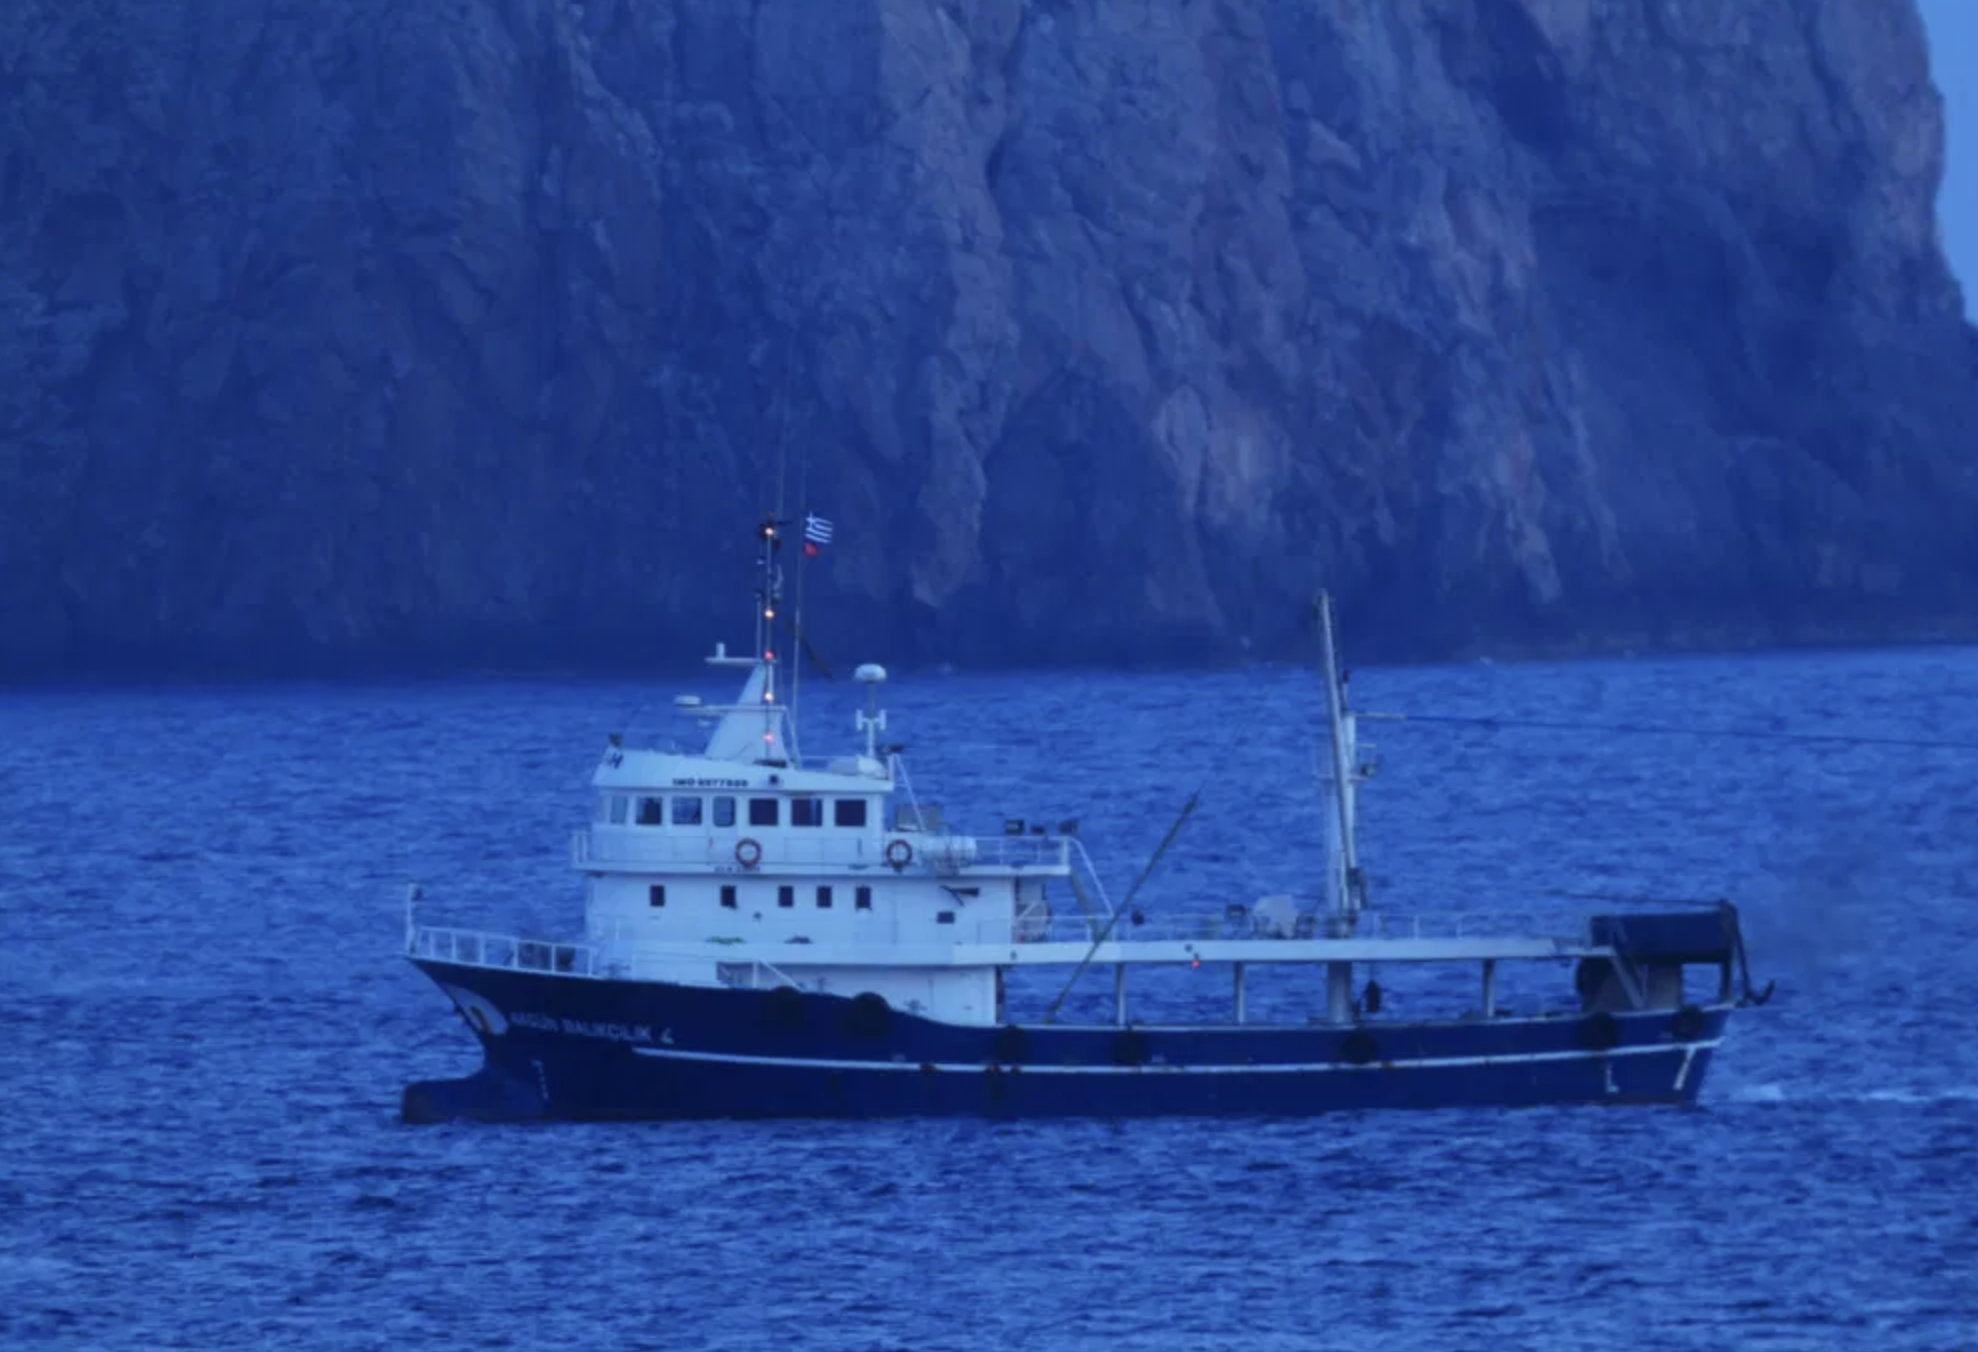 Κάλλιο αργά παρά ποτέ! Το ΥΠΕΞ κάνει διάβημα στην Τουρκία για παράνομη αλιεία